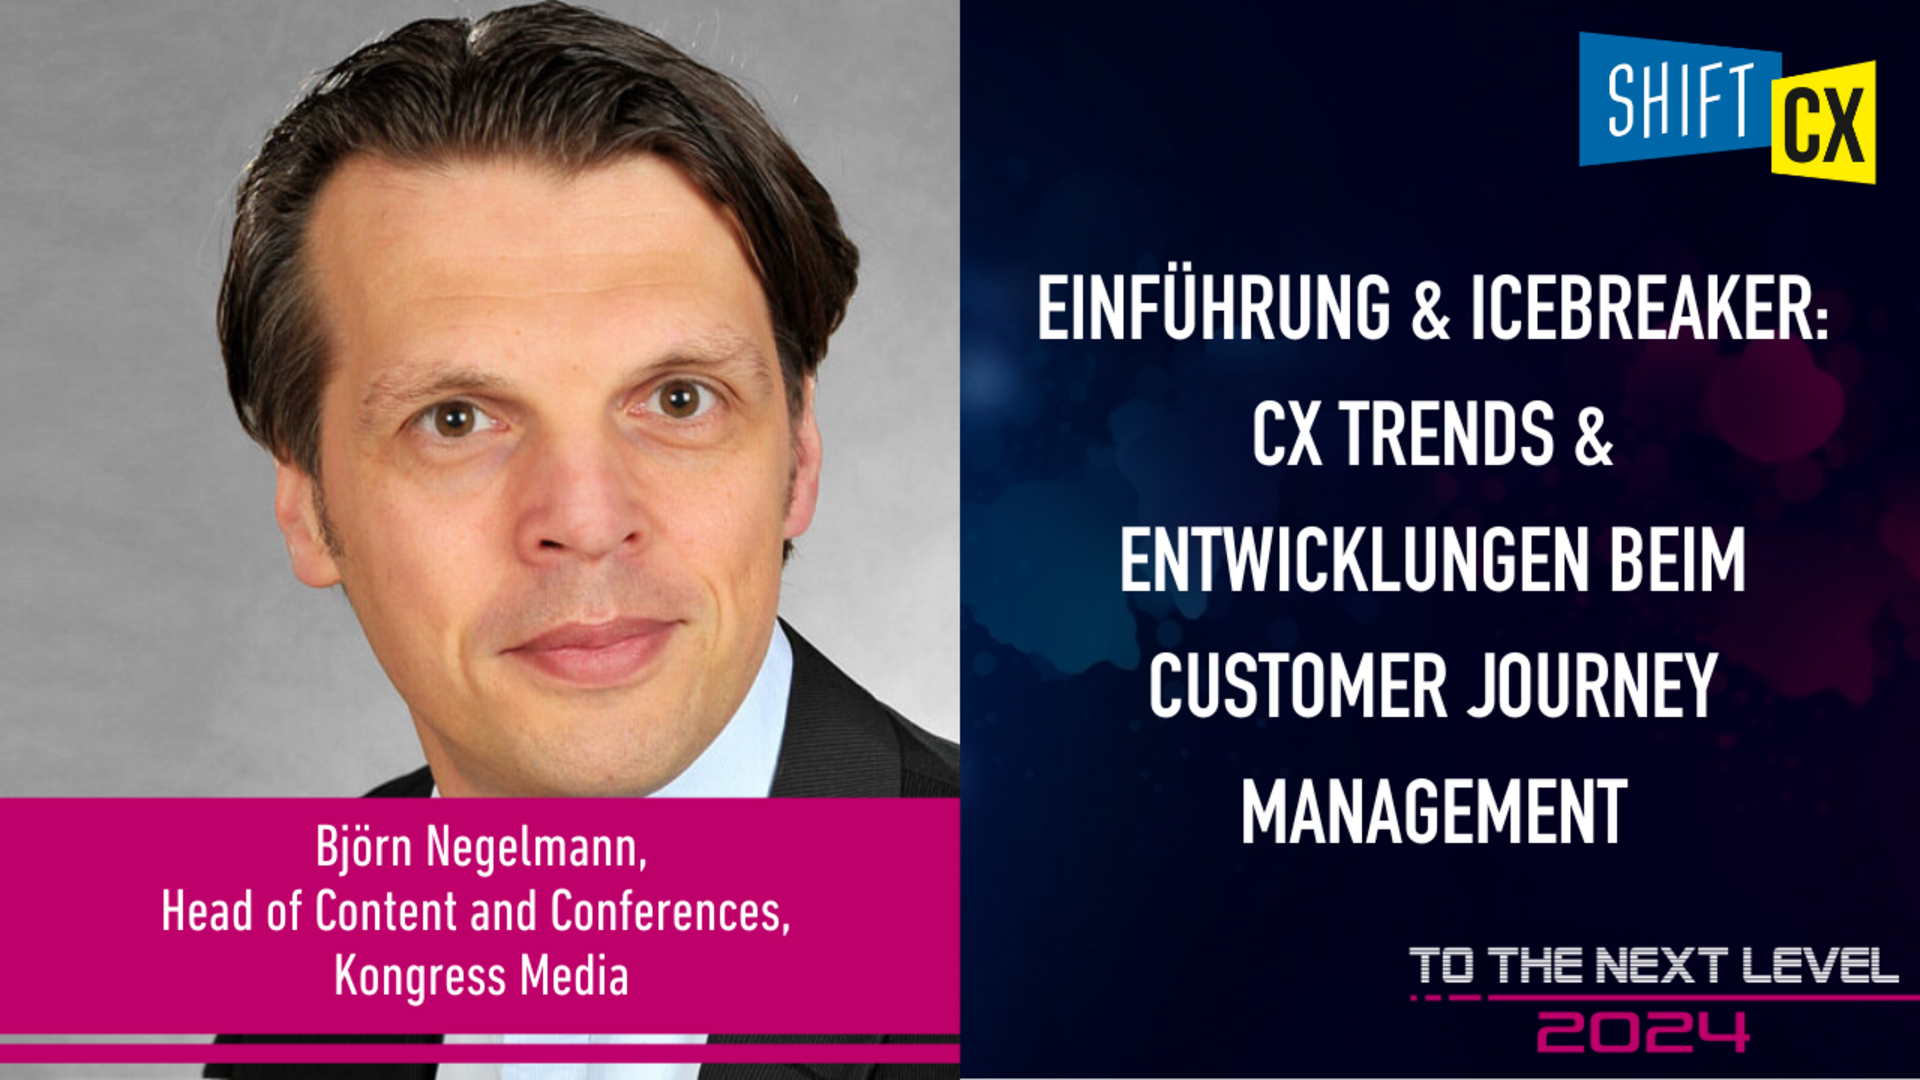 Einführung & Icebreaker: CX Trends & Entwicklungen beim Customer Journey Management